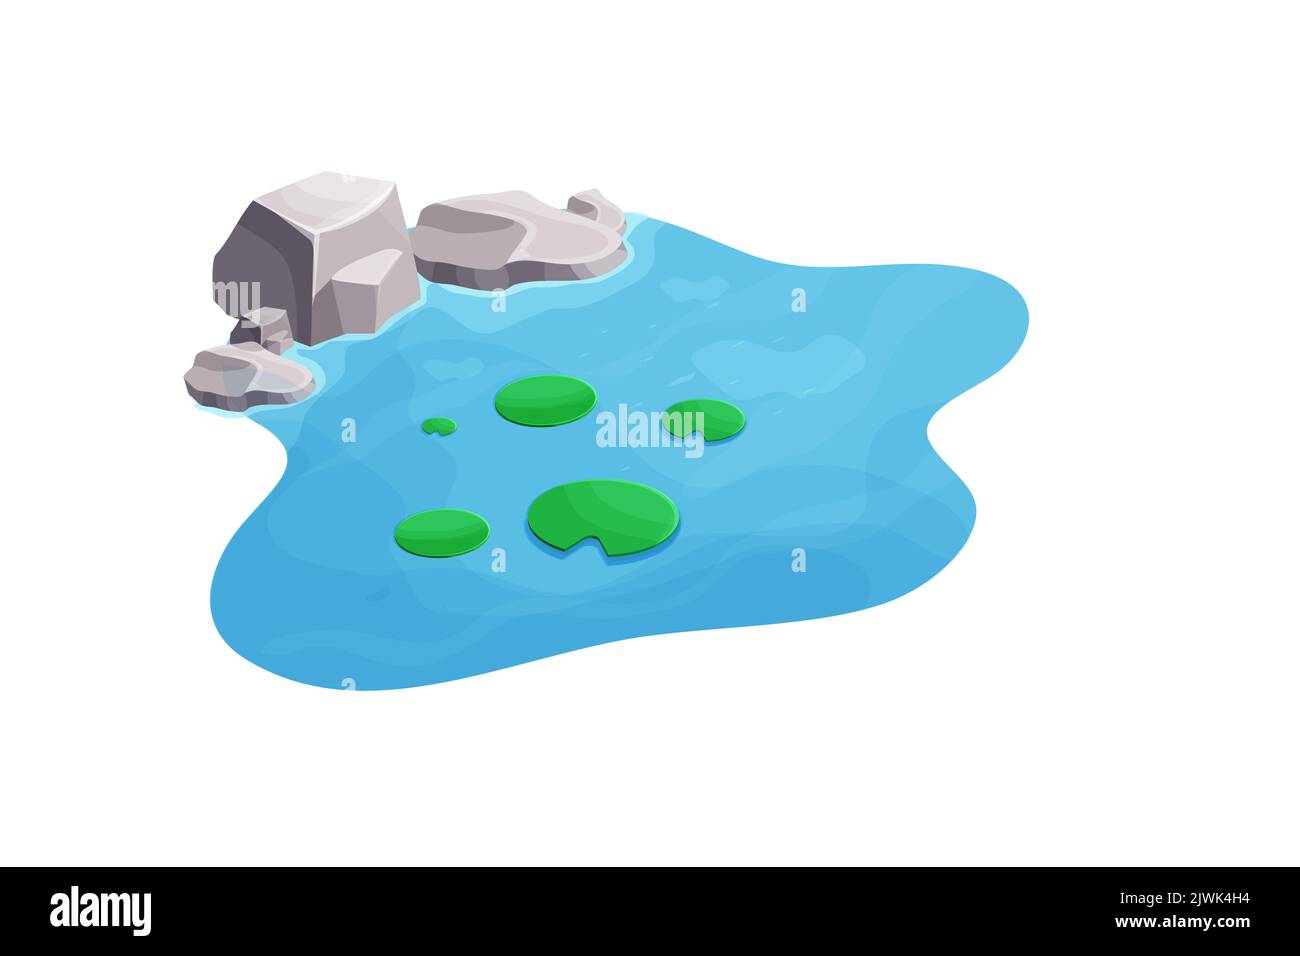 See mit ruhigem Wasser, Lilie und Steinen im Cartoon-Stil isoliert auf weißem Hintergrund. Naturteich im Freien. Isometrische Ansicht. Vektorgrafik Stock Vektor